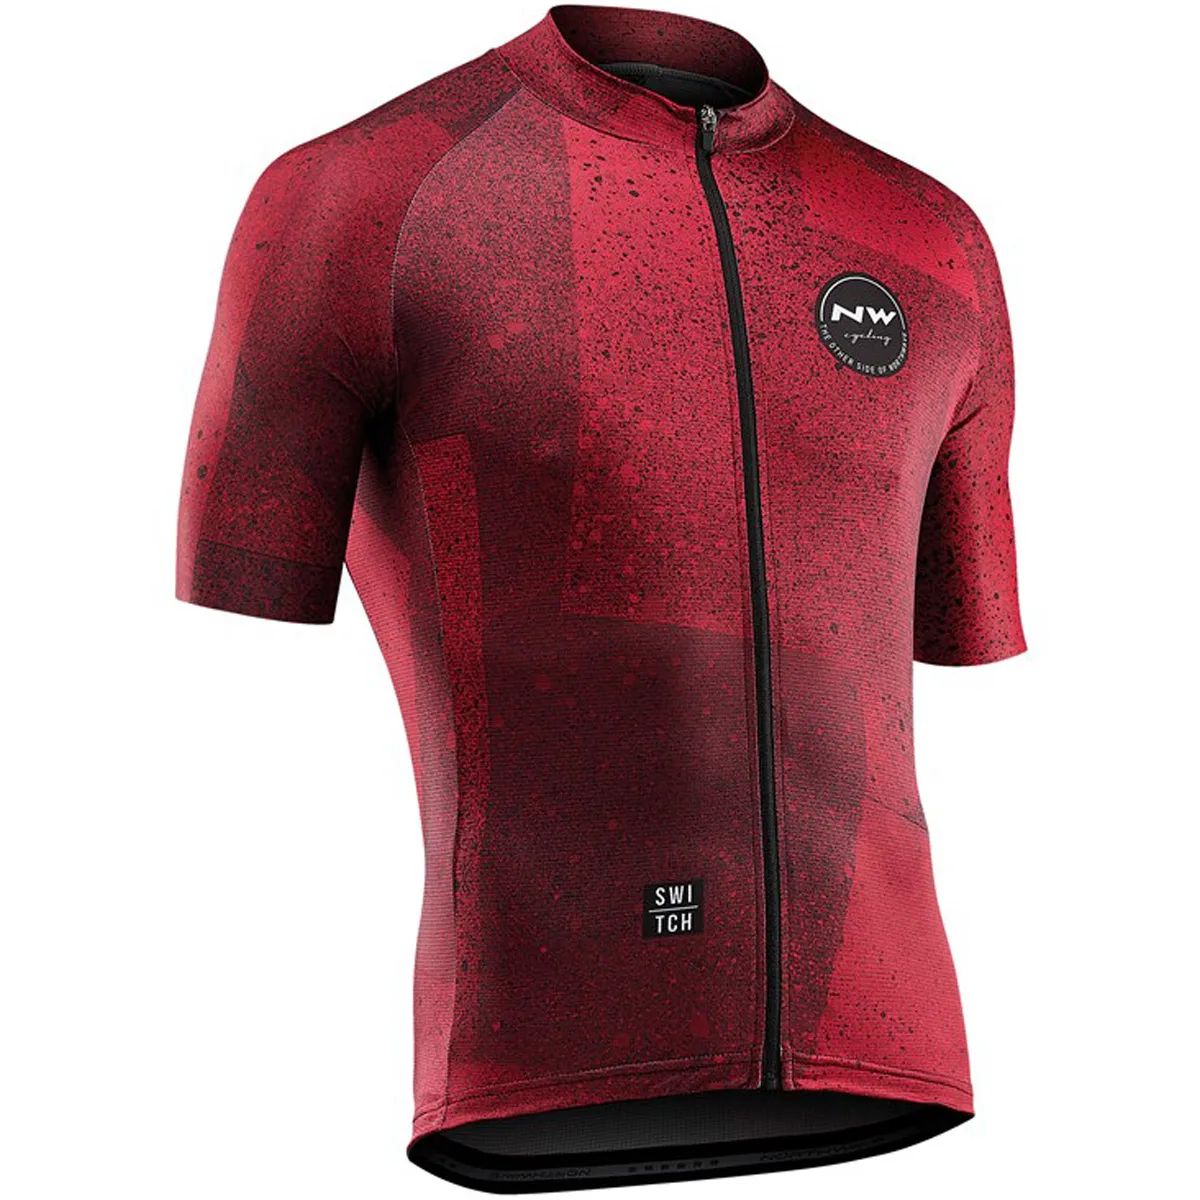 Northwave NW велосипедная майка, мужская стильная одежда с коротким рукавом, спортивная одежда, уличная одежда для горного велосипеда, ropa de ciclismo - Цвет: 14